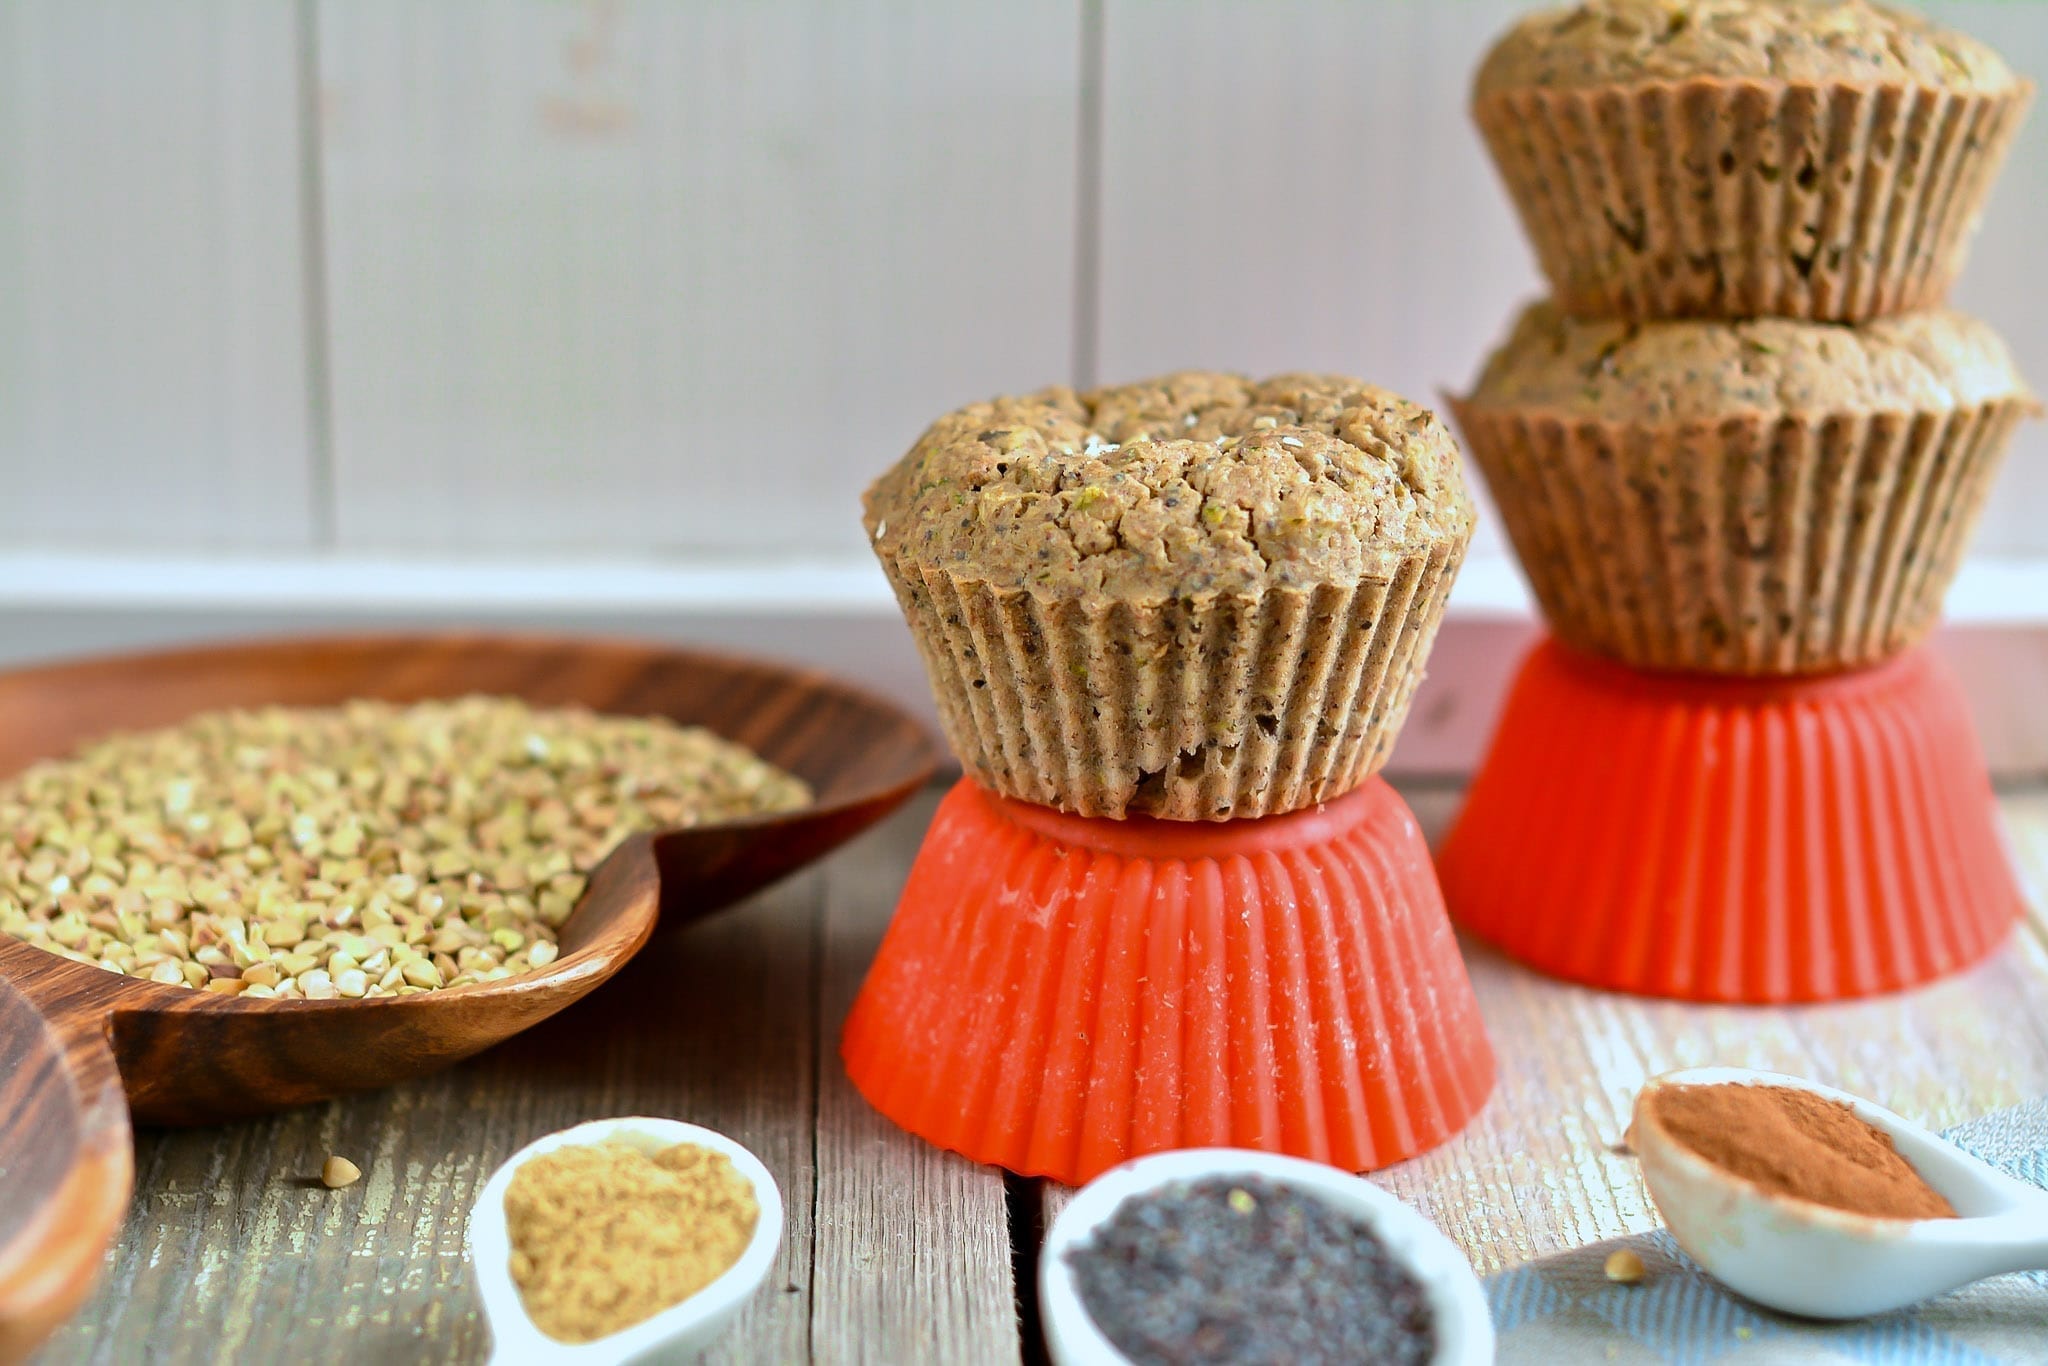 muffins-oat-bran-buckwheat-with-zucchini